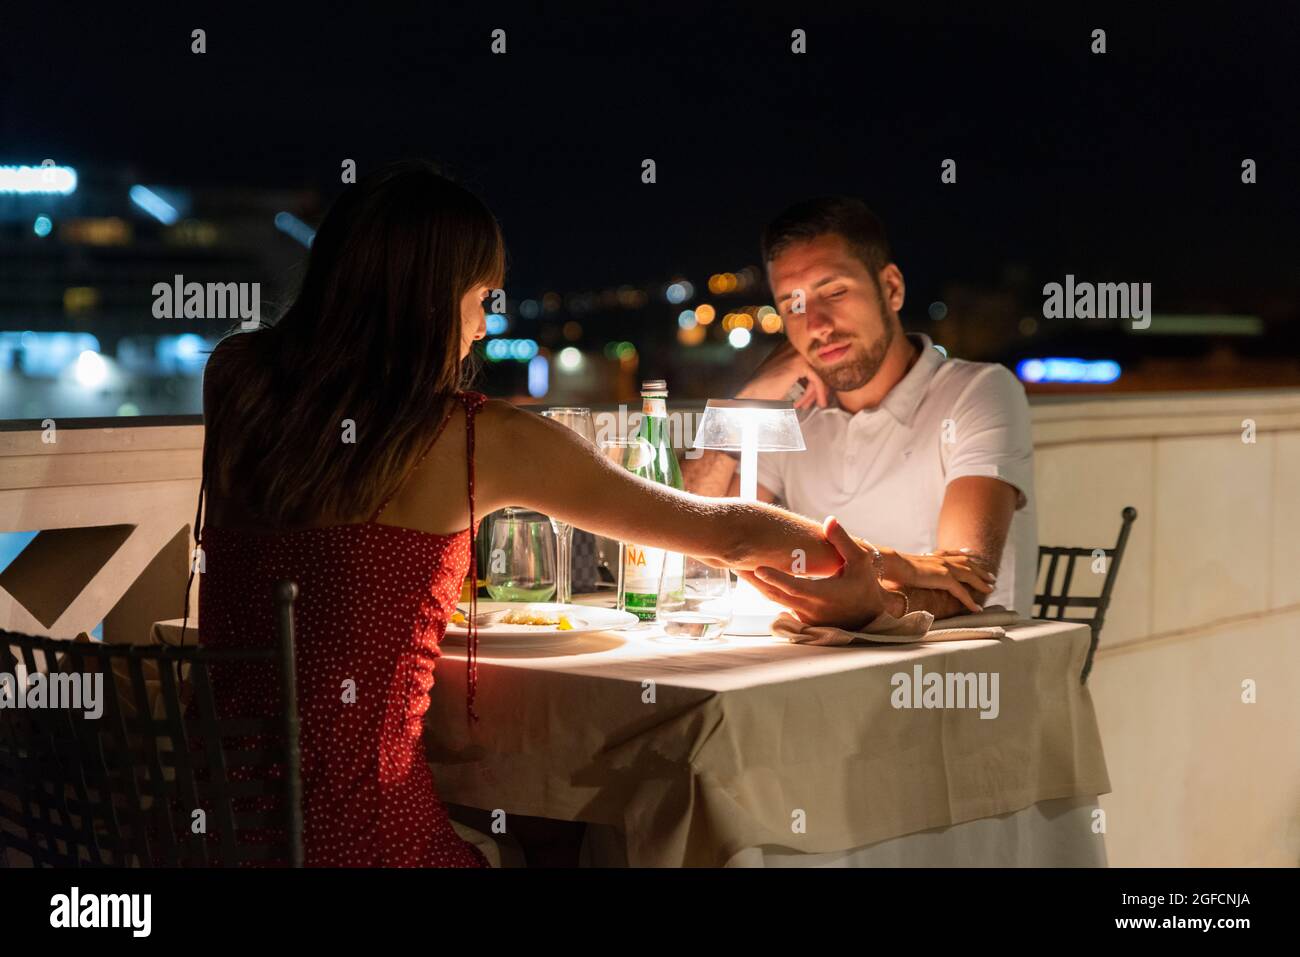 un dîner romantique, cena romantica Banque D'Images